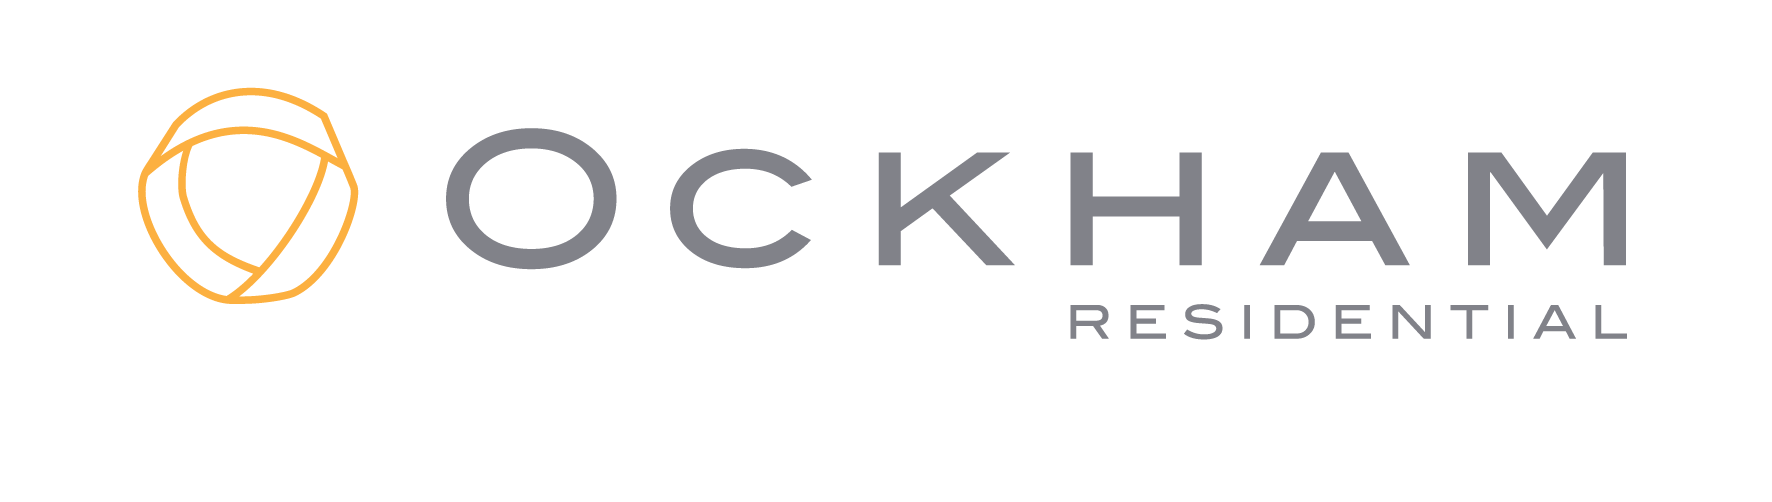 Ockham logo